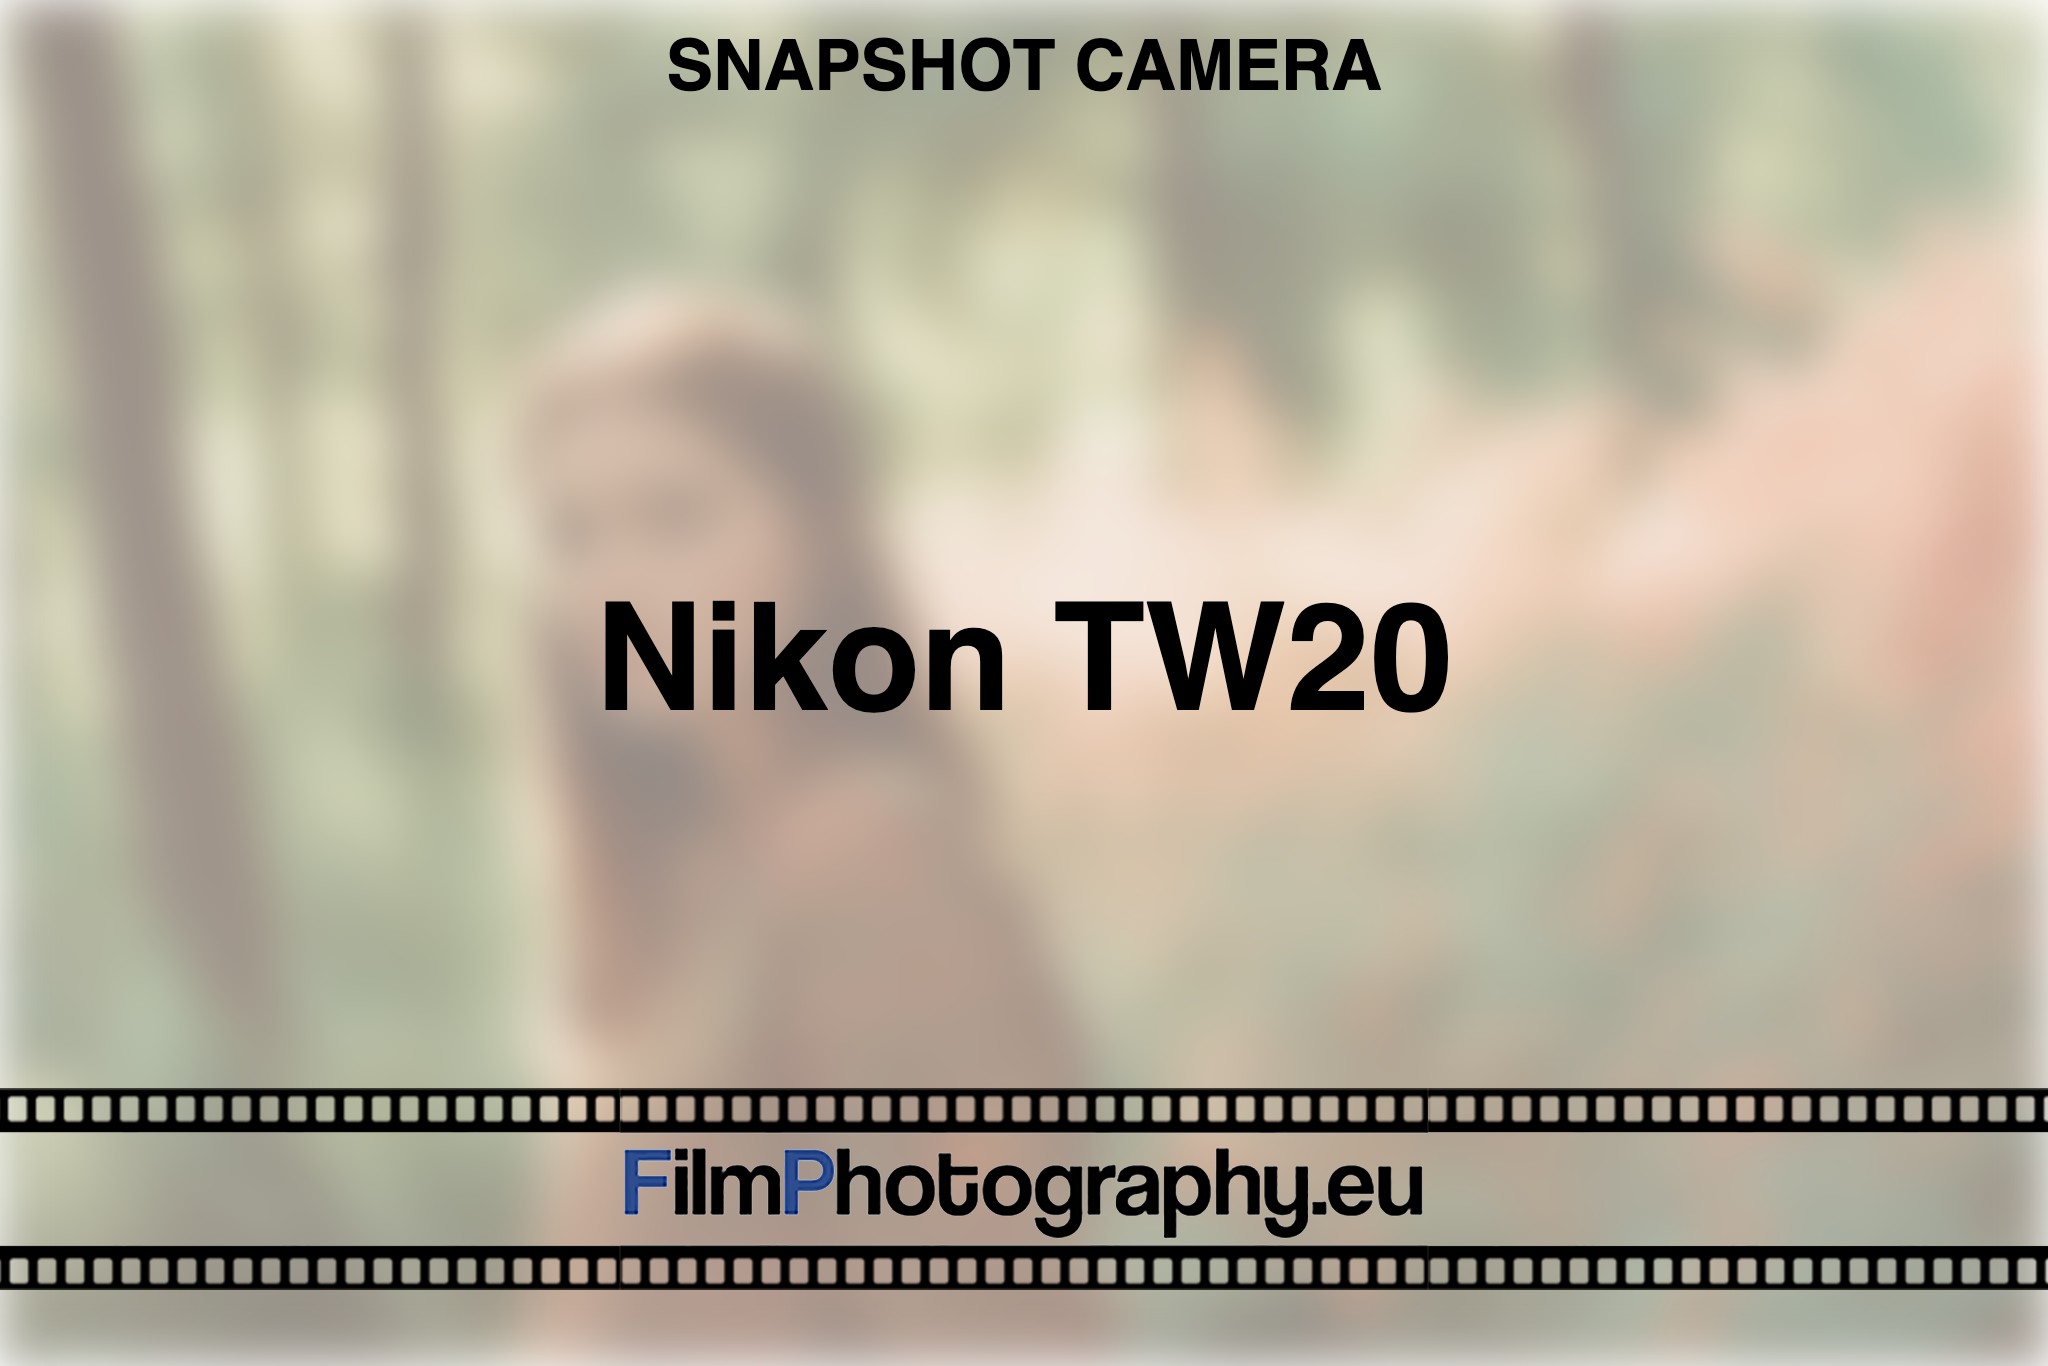 nikon-tw20-snapshot-camera-bnv